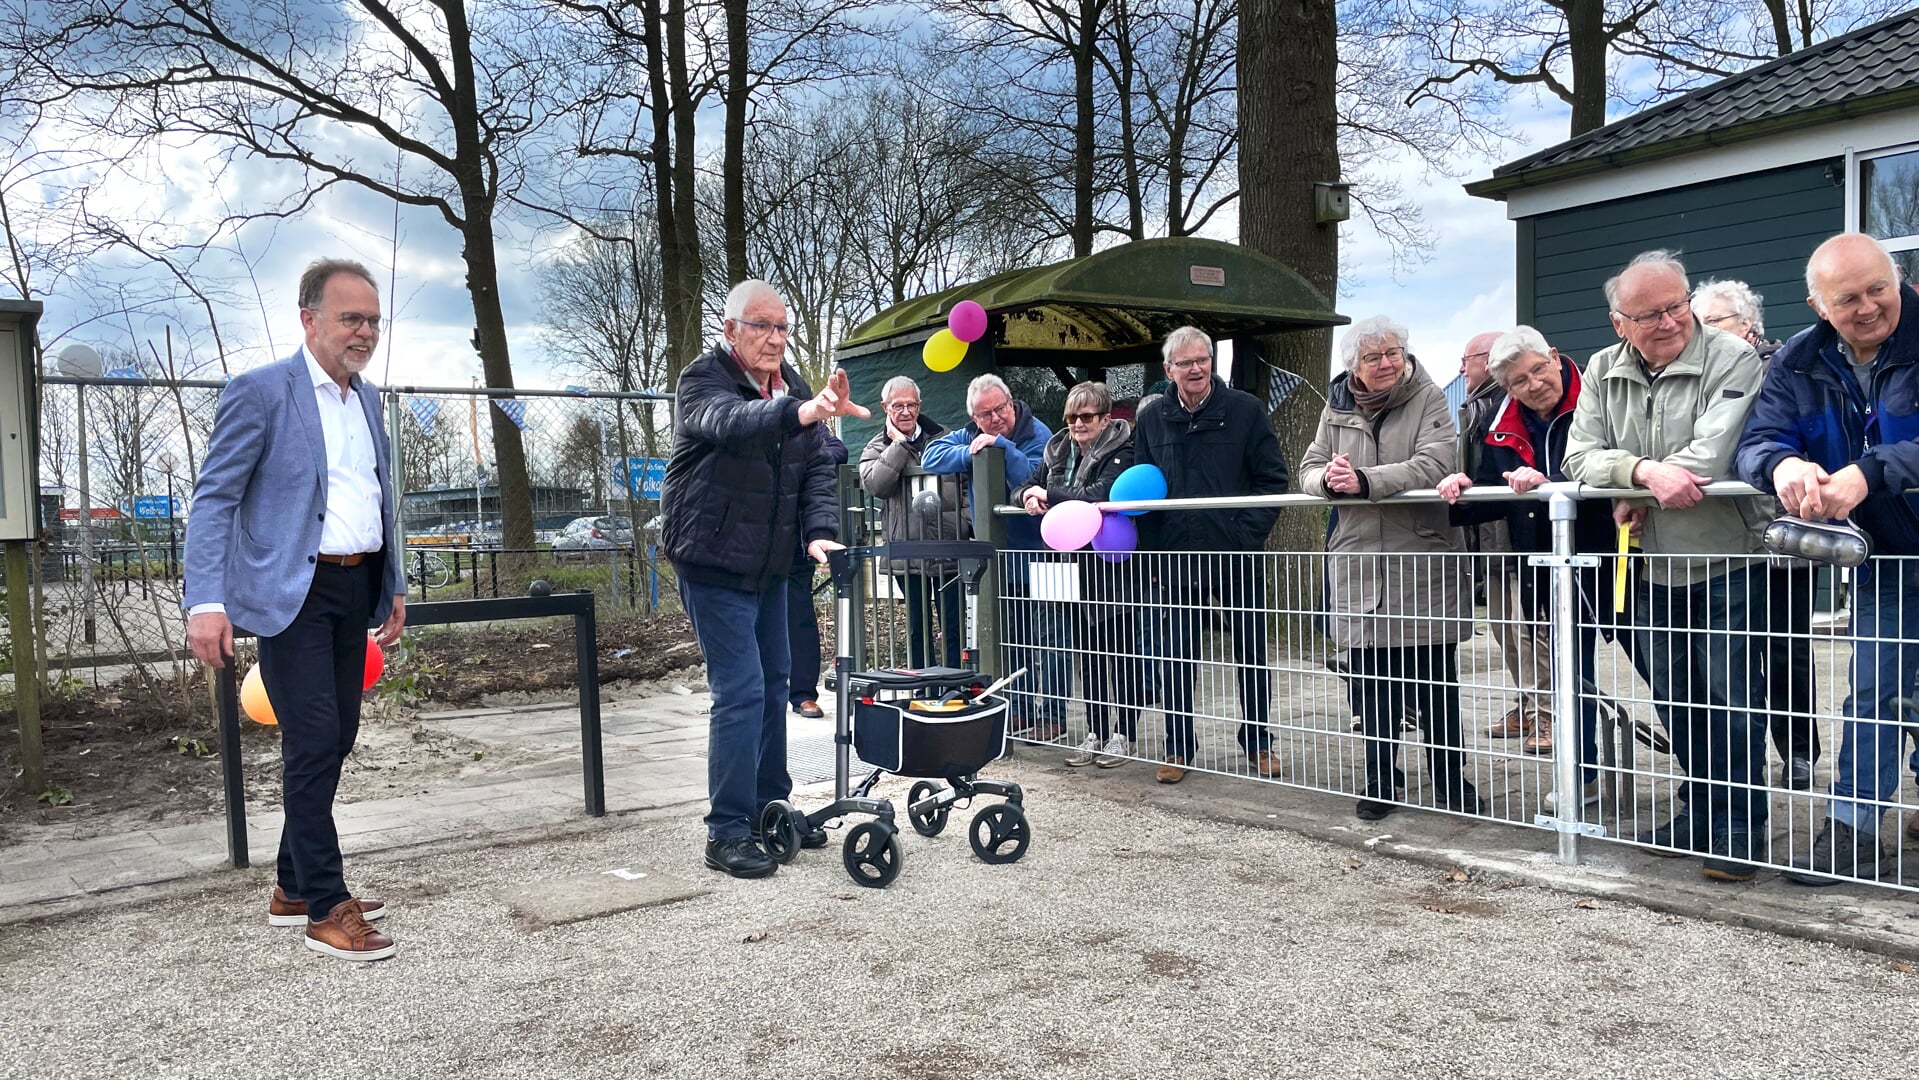 Wethouder Libbe de Vries en Epie van der Meer openen de nieuwe Jeu de boules-baan van Gorredijk.